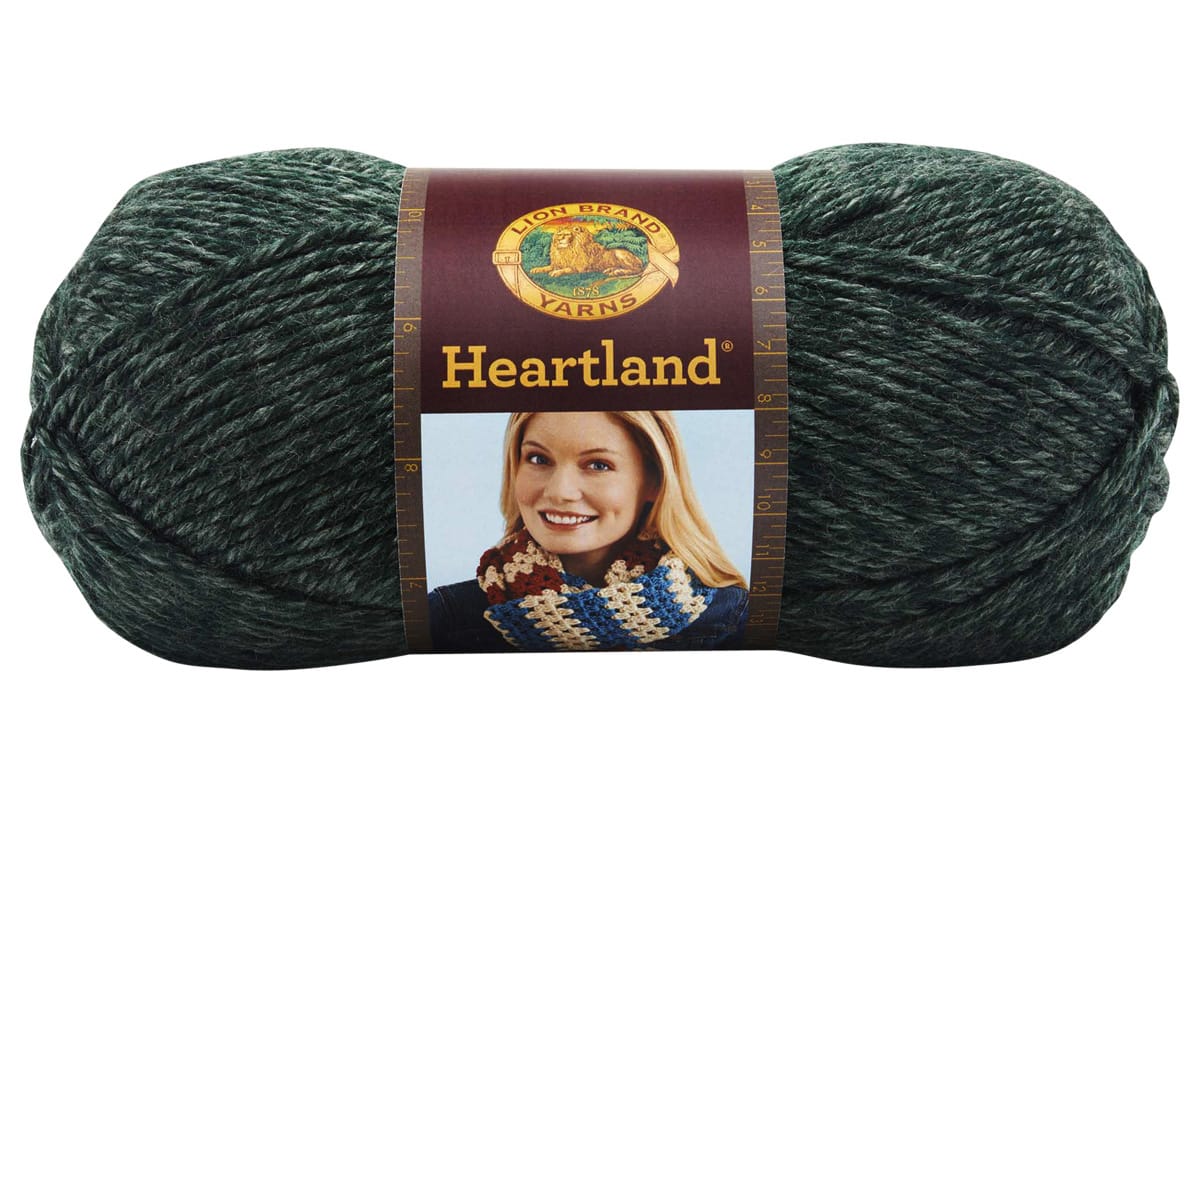 Heartland® Yarn  Yarn, Lion brand yarn, Heartland